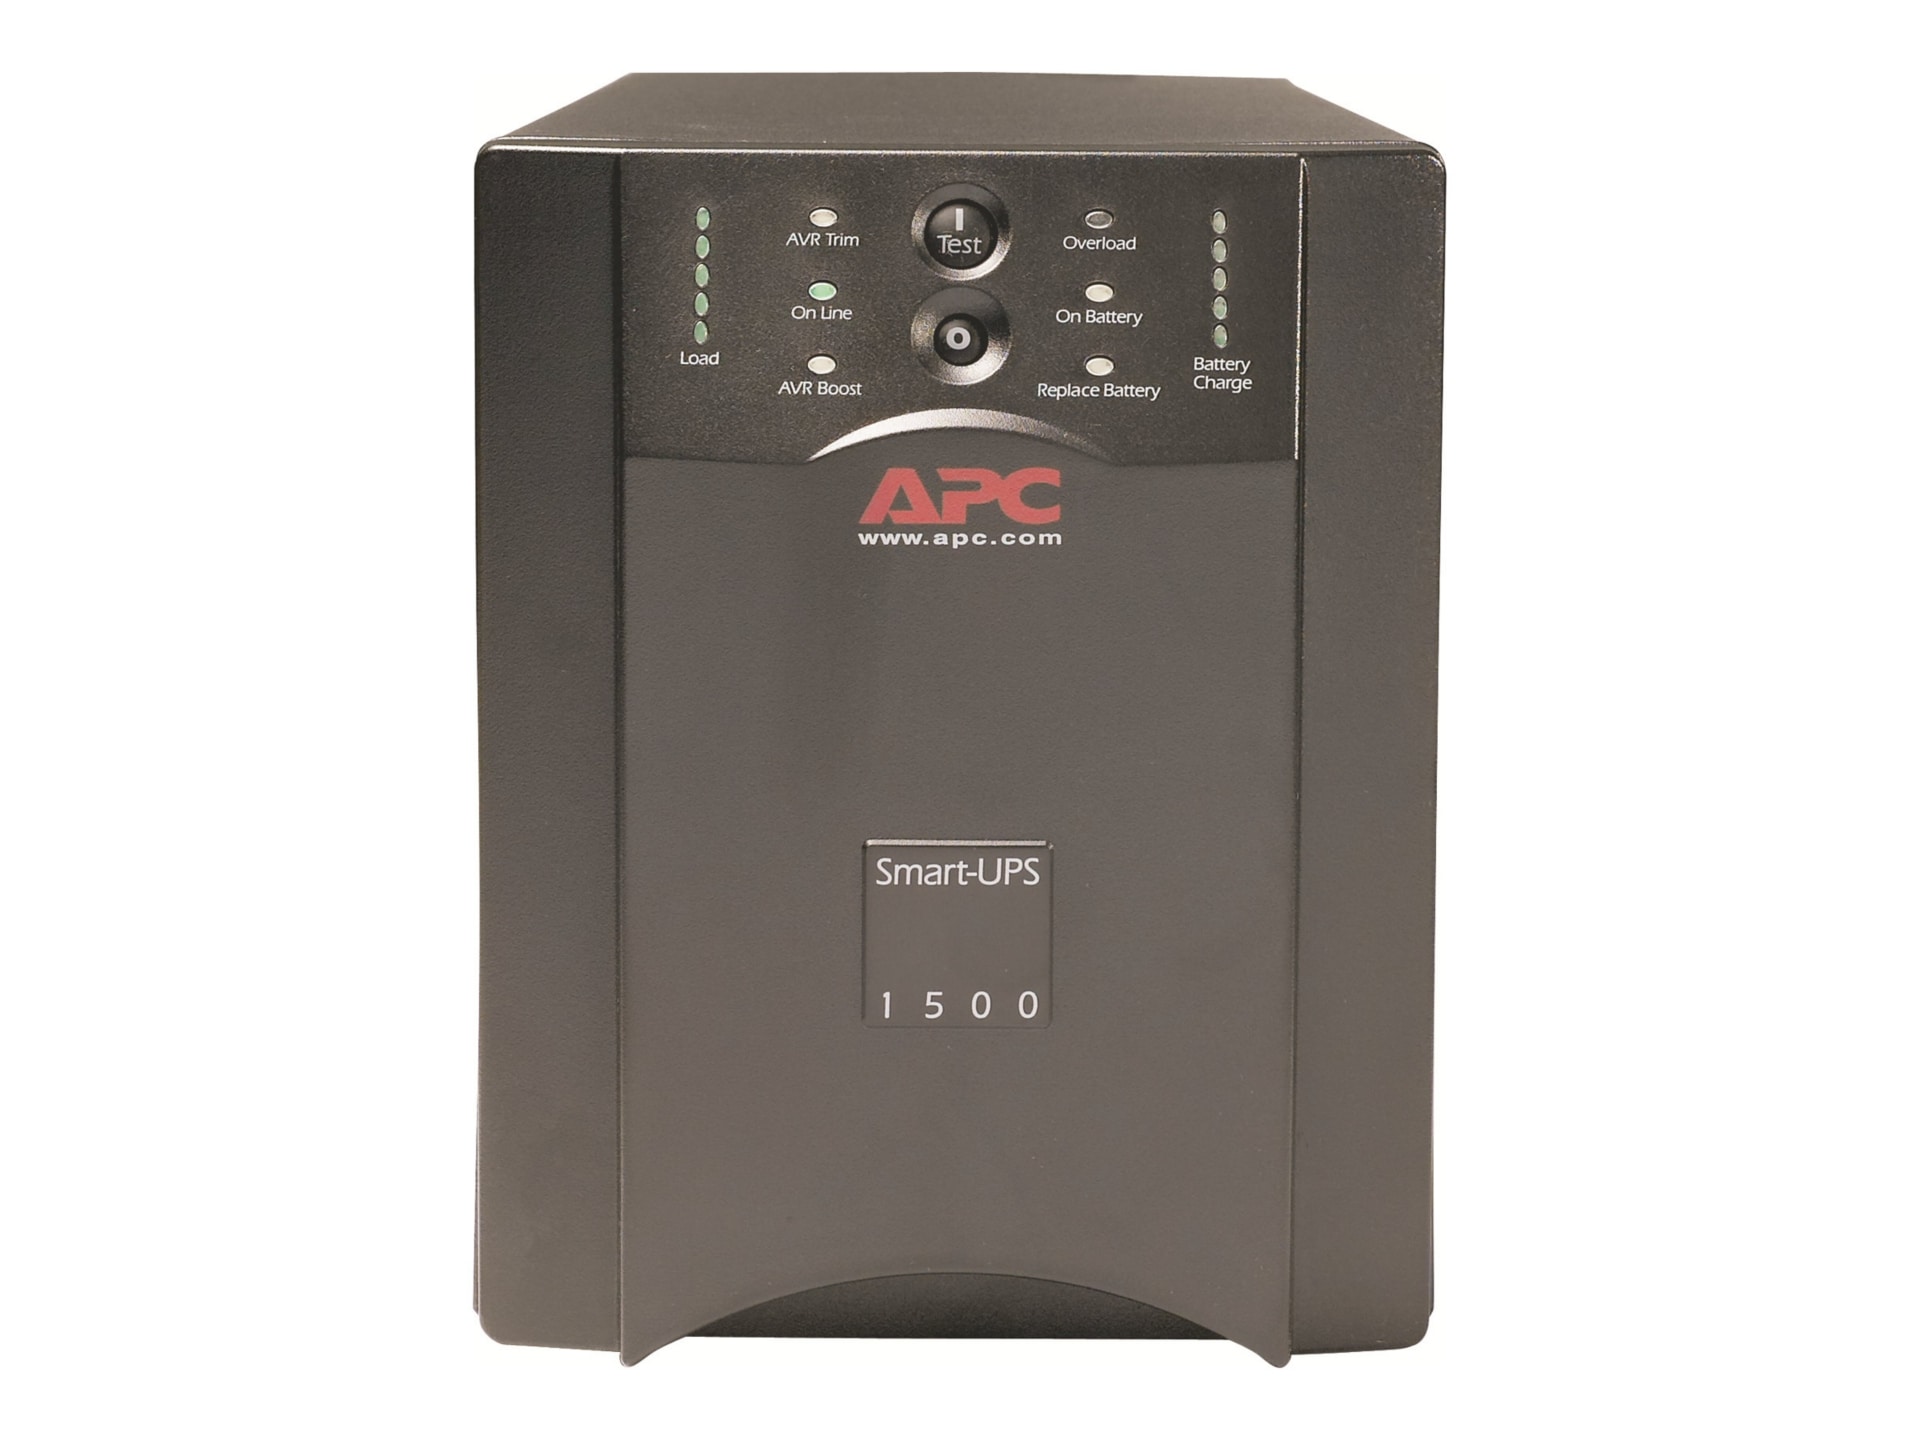 APC SMART UPS 1500VA 230V UL APPROVE